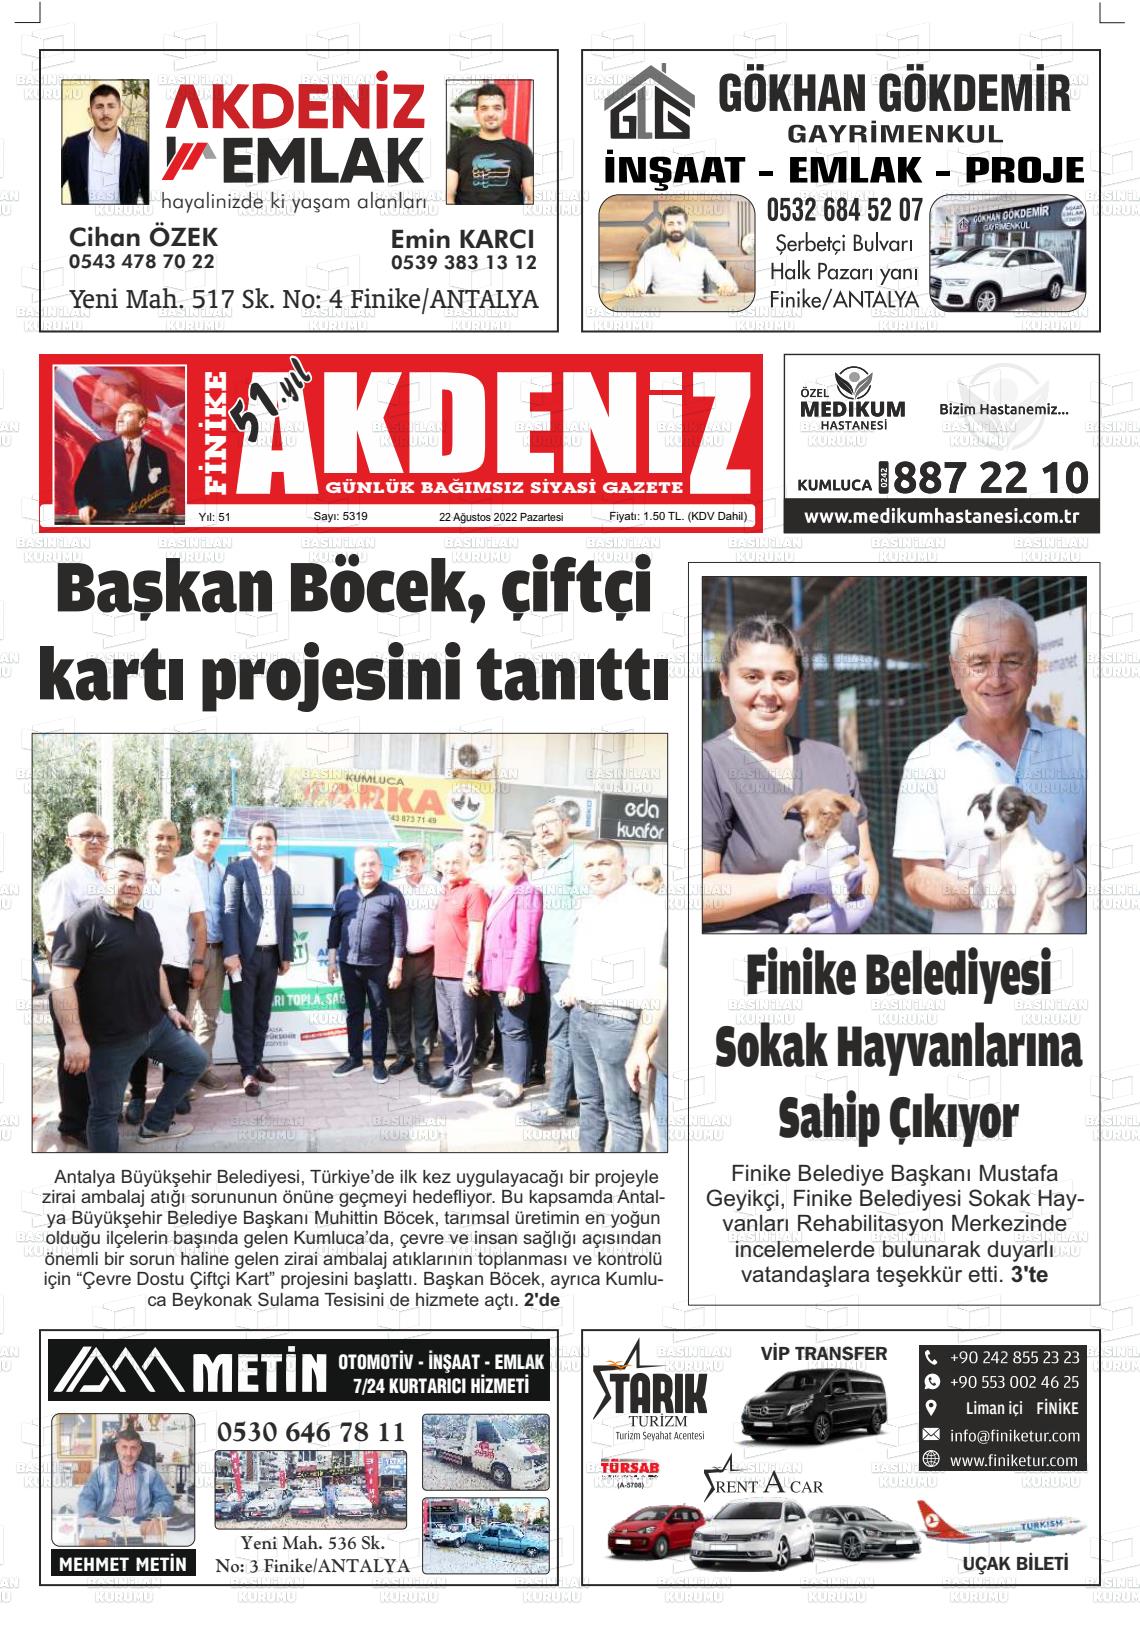 22 Ağustos 2022 Finike Akdeniz Gazete Manşeti